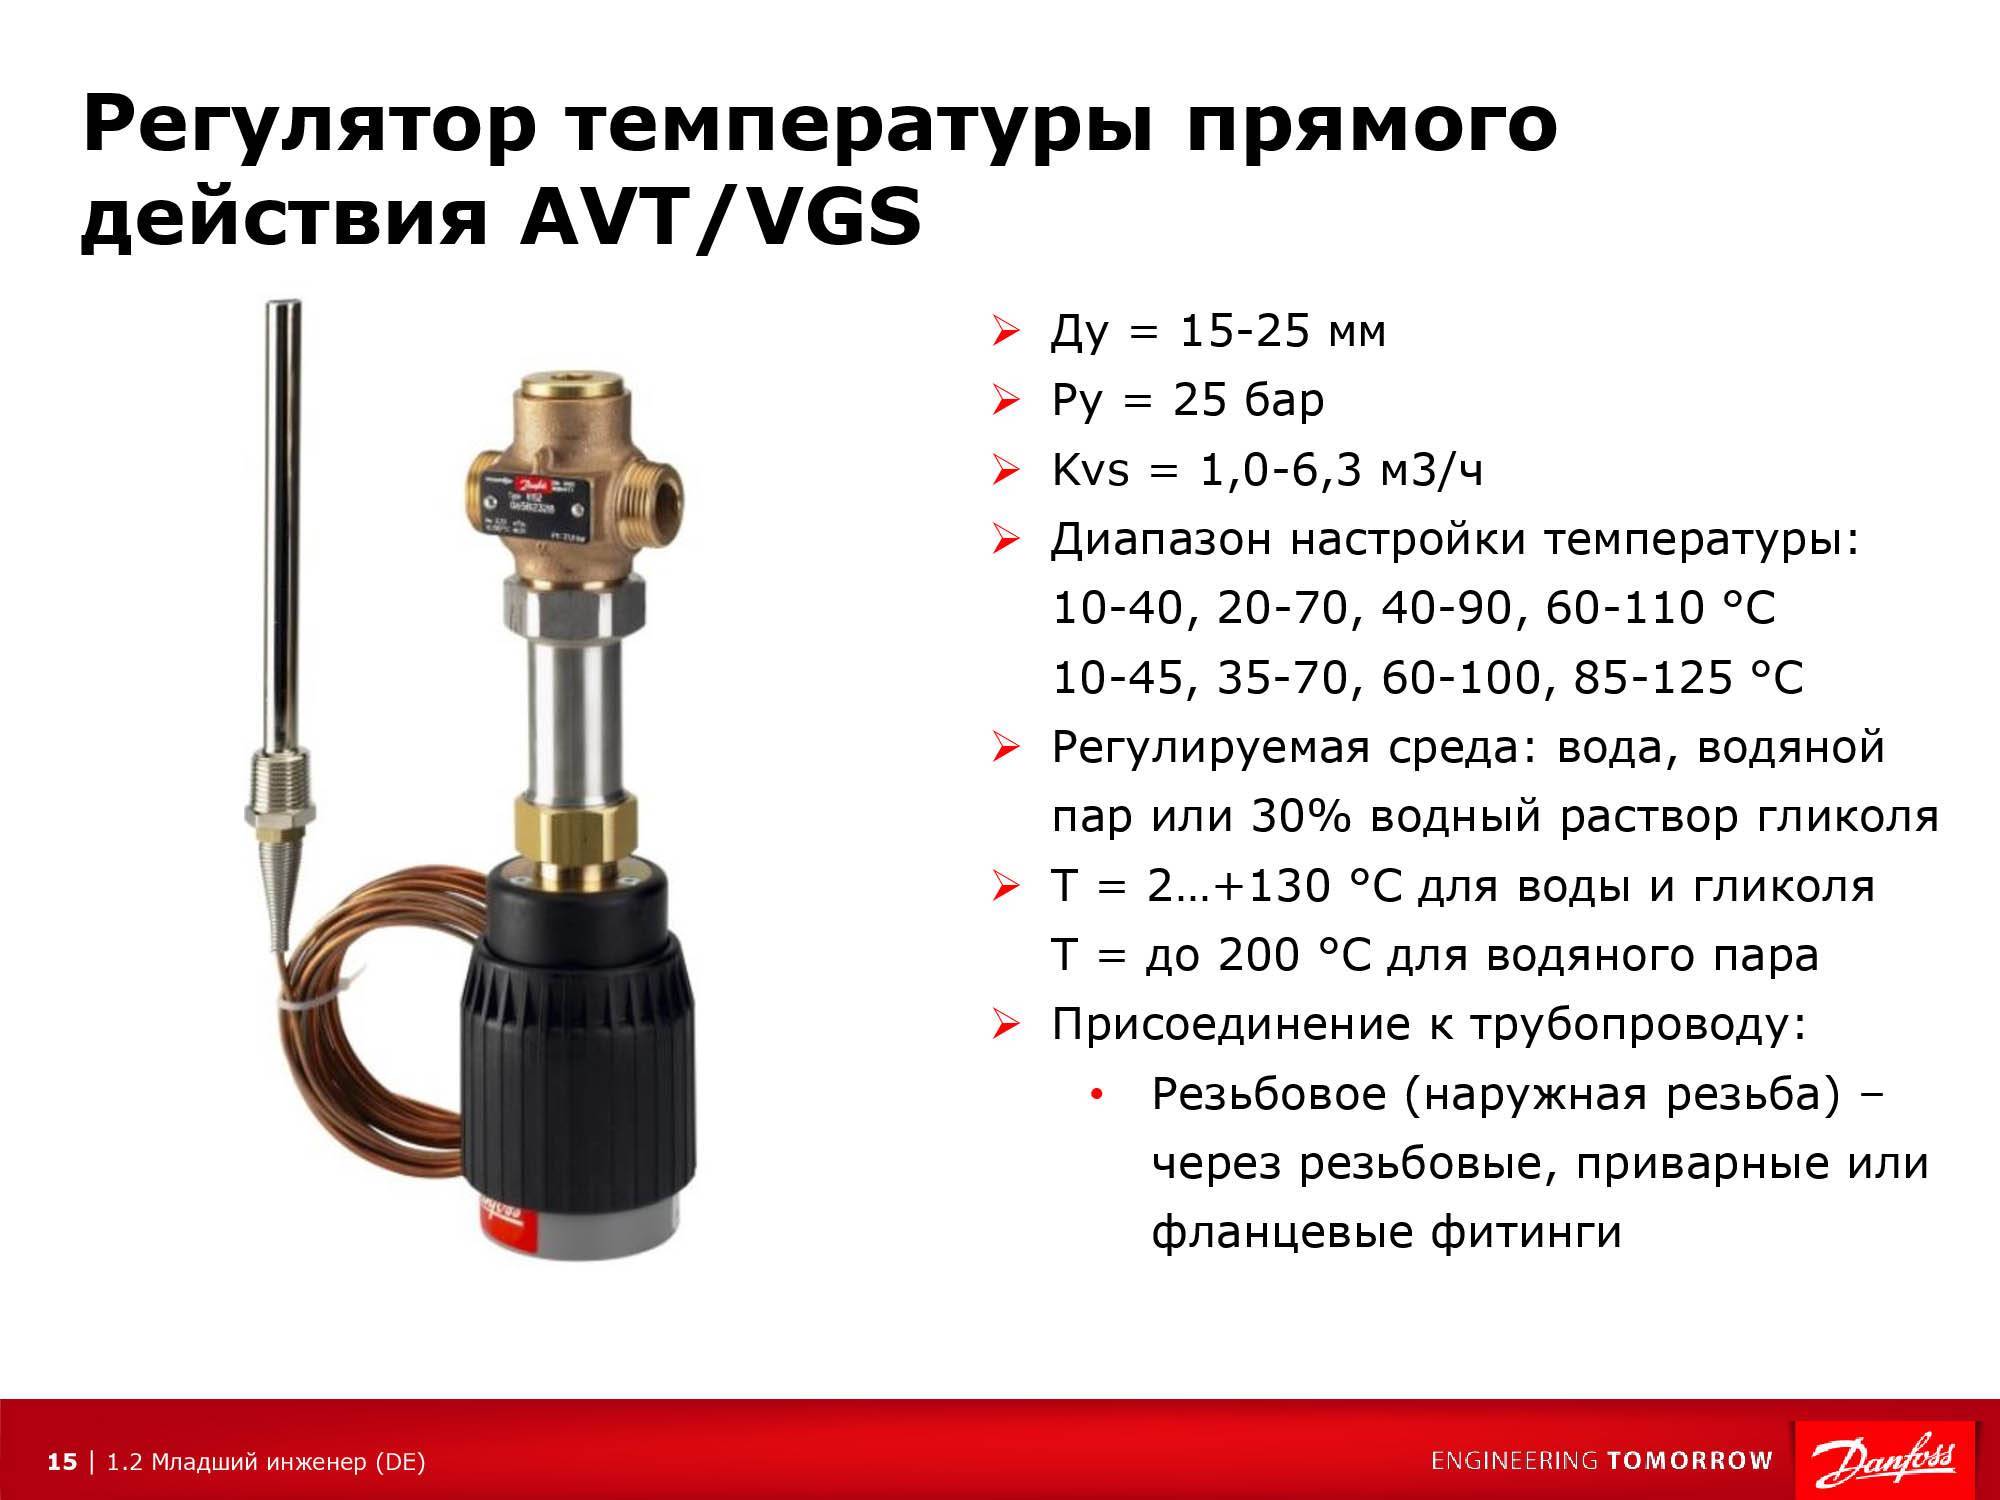 Терморегулятор с выносным датчиком температуры воздуха: характеристики и применение